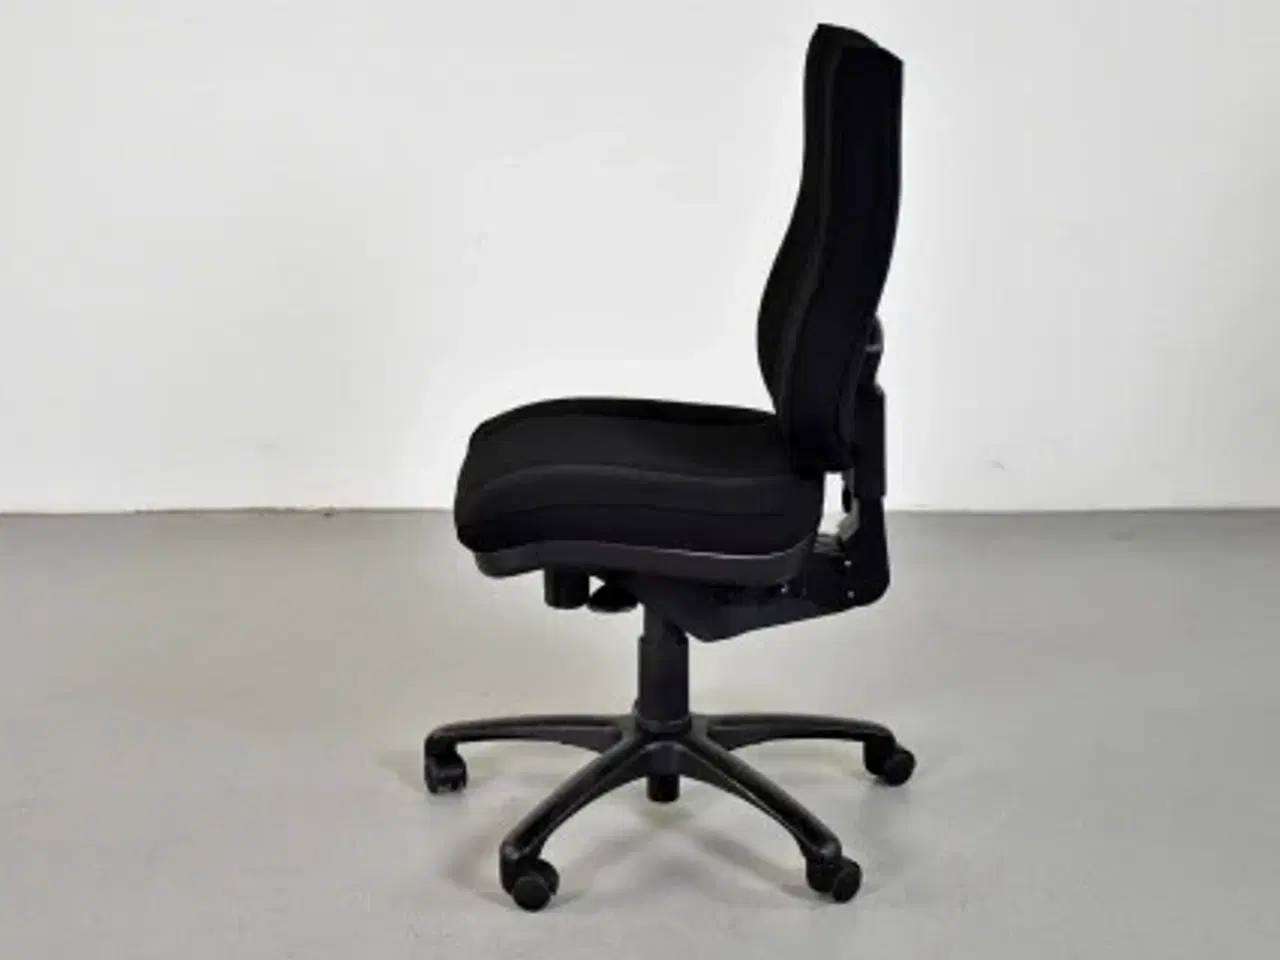 Billede 2 - Rbm model 800 kontorstol med høj ryg og nyt sort polster